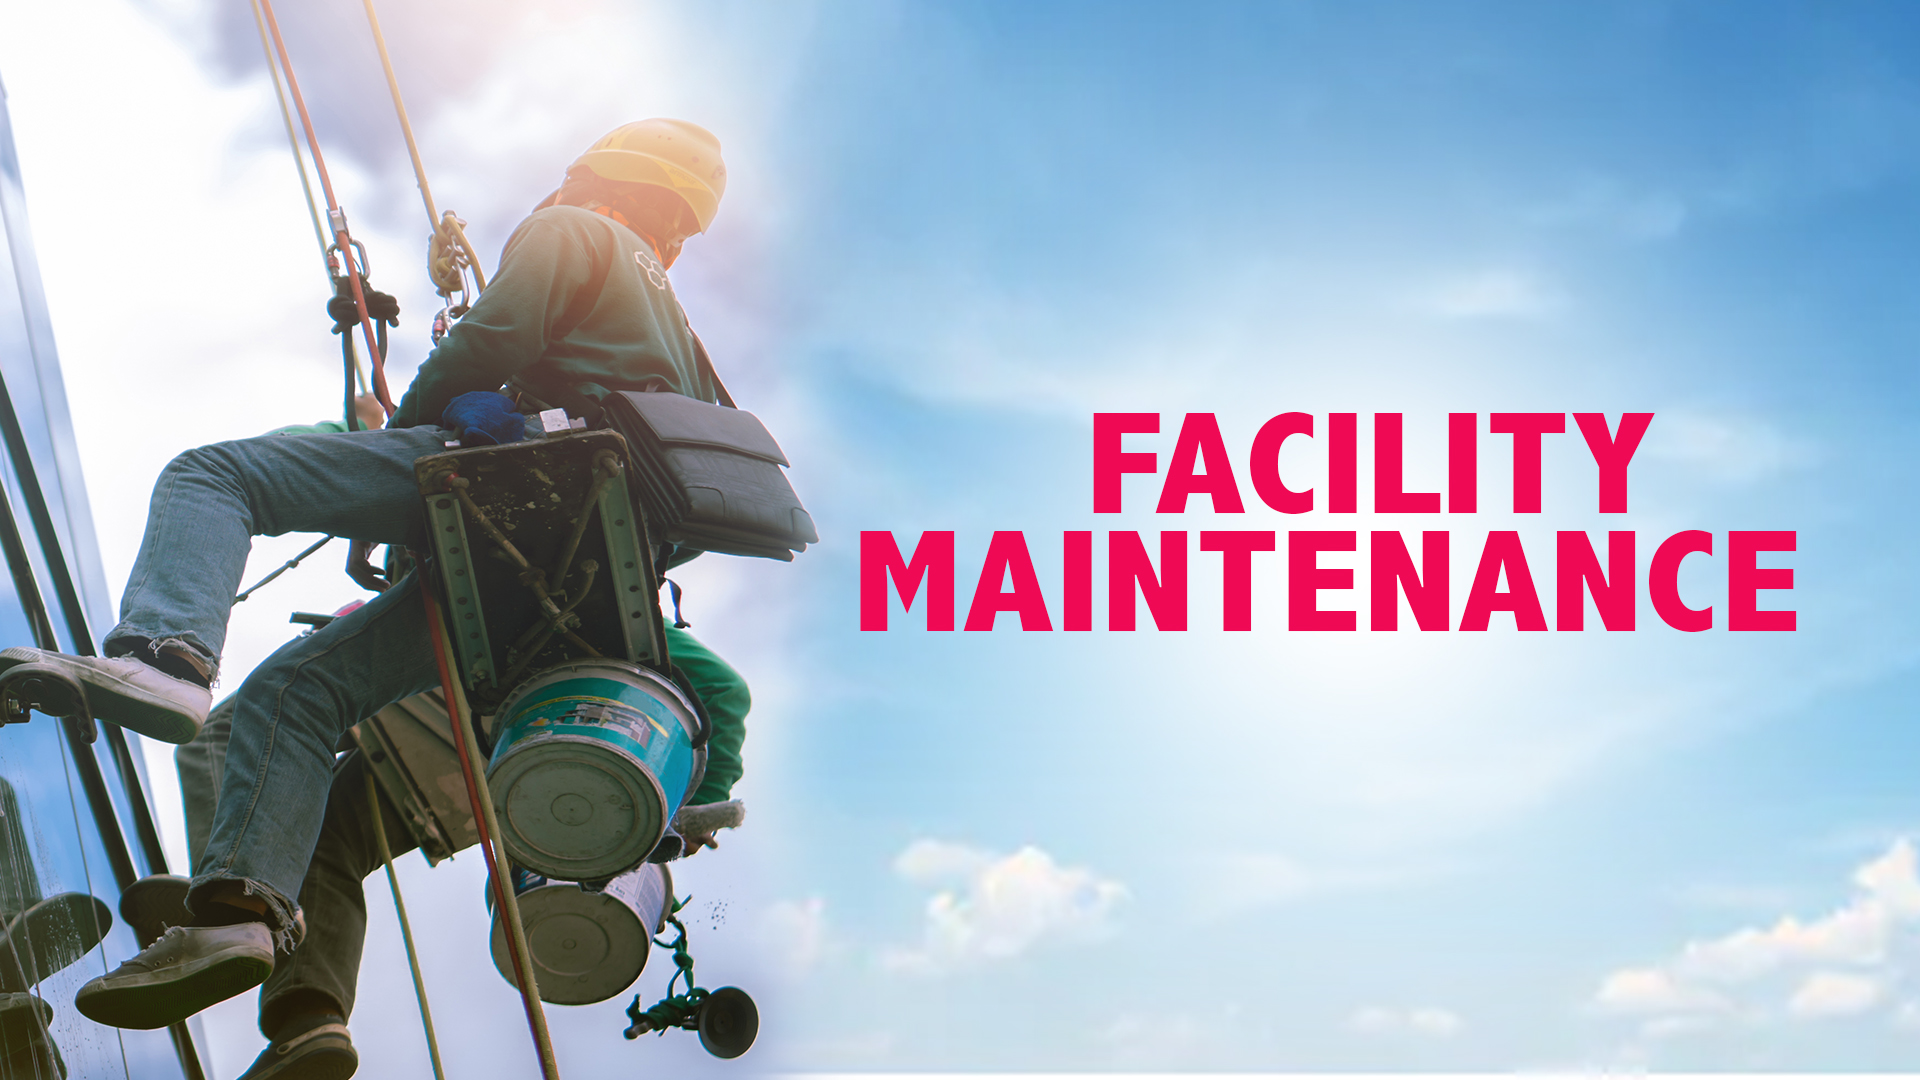 Facility Maintenance Company in Dubai